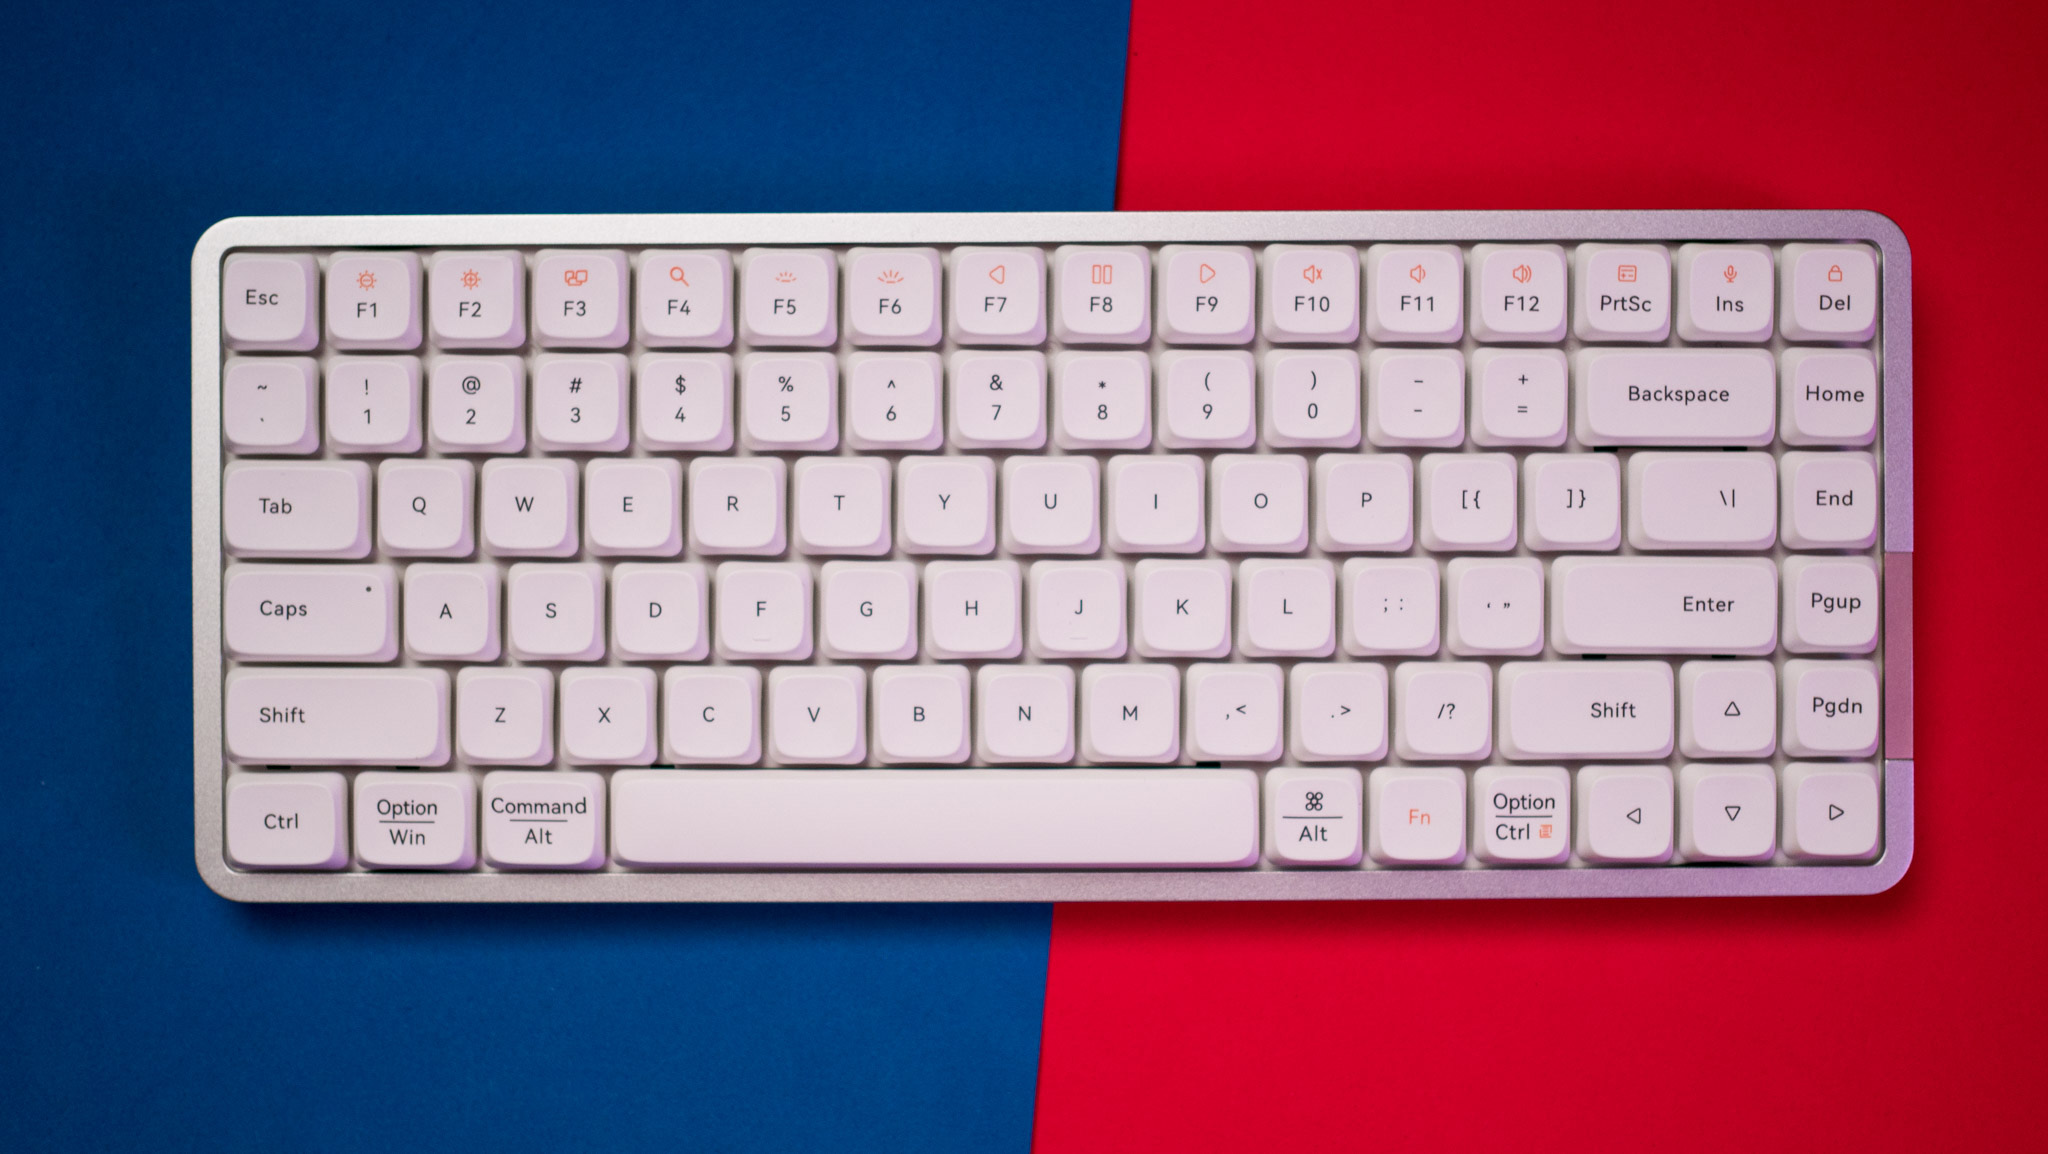 Vista frontal do teclado Lofree Flow contra fundo azul e vermelho